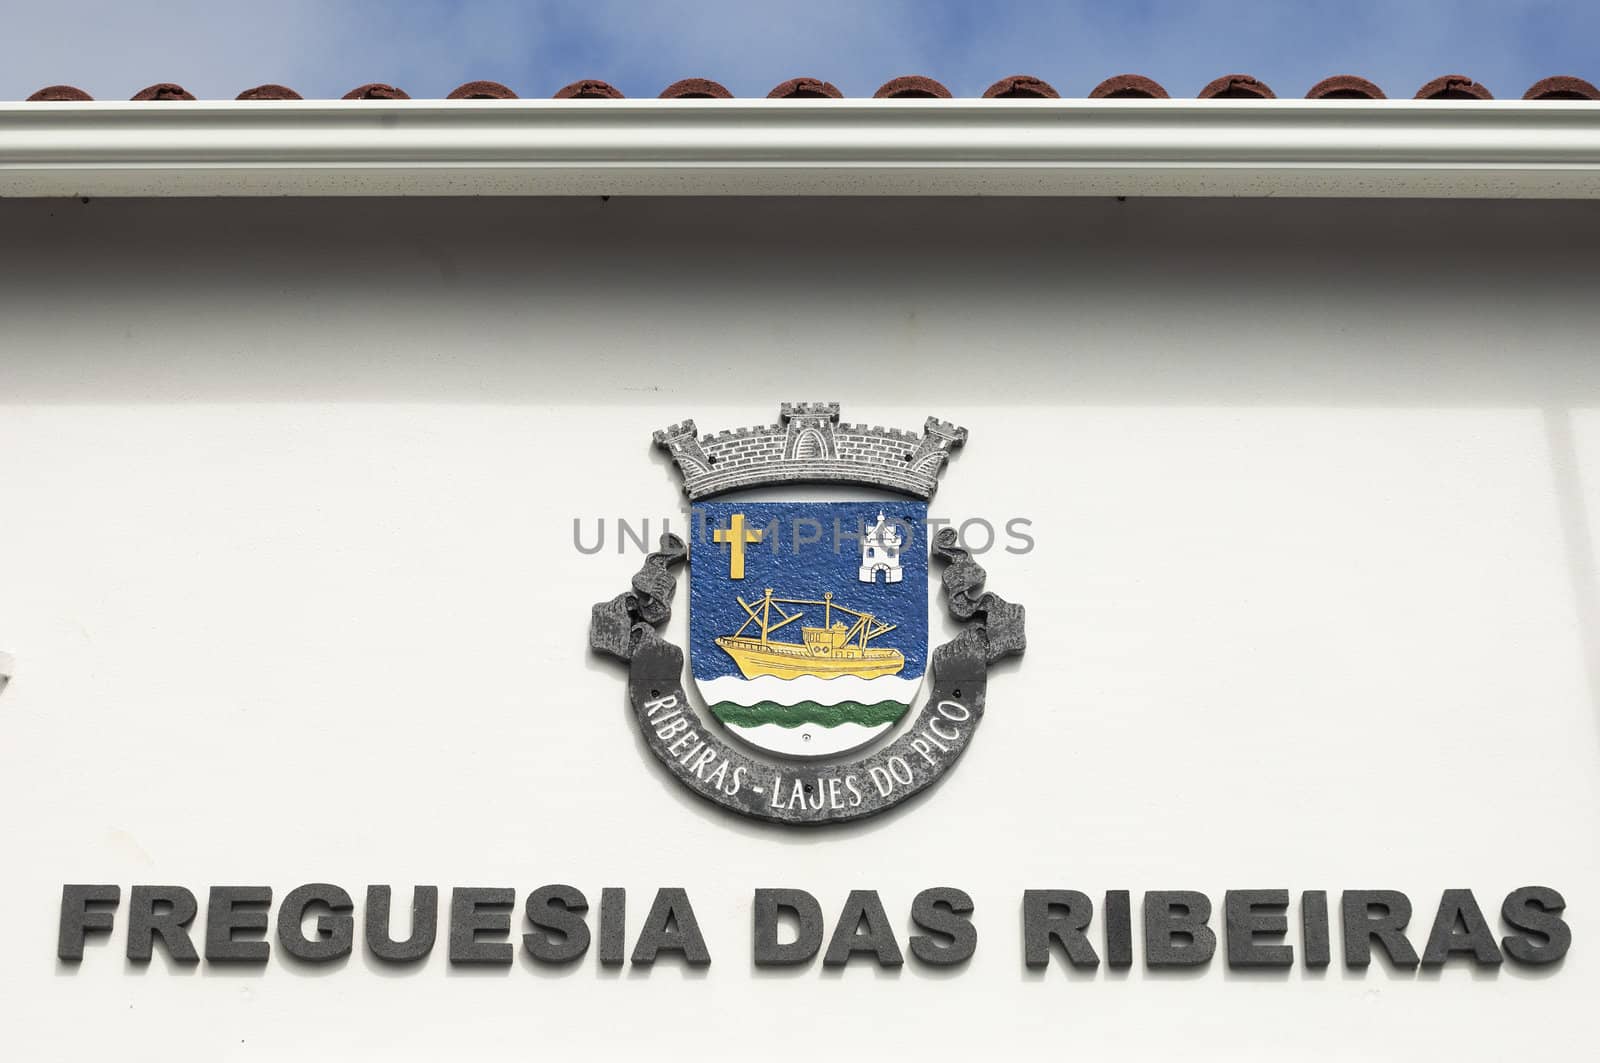 Parish council blazon of Ribeiras, Pico island, Azores